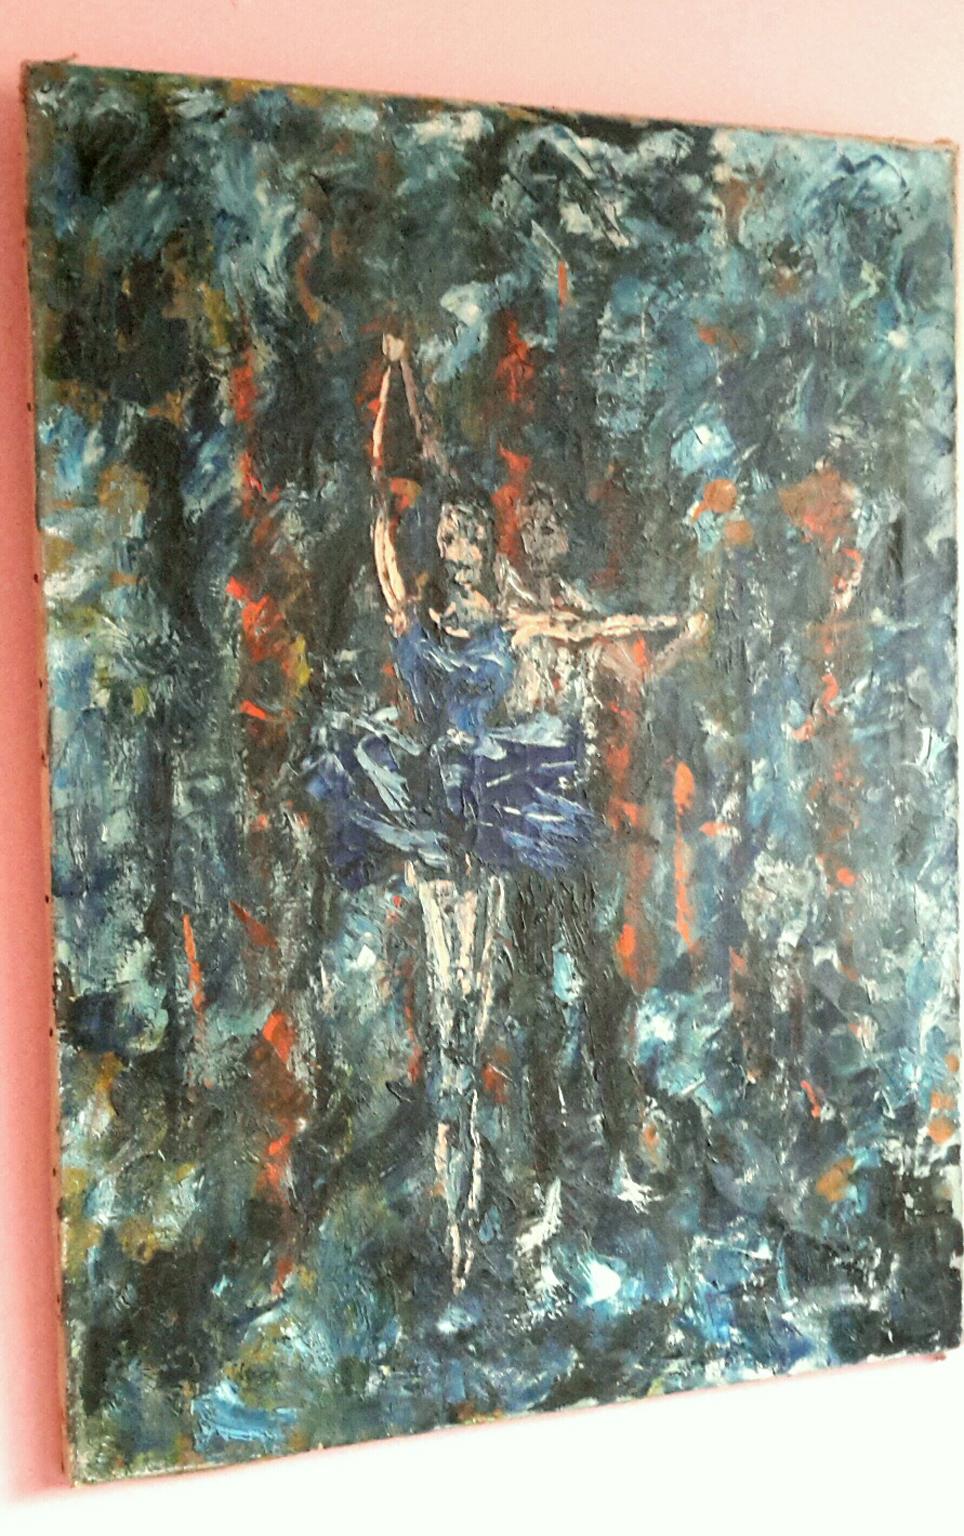 Grande huile sur toile belge de style expressionniste du début du 20e siècle représentant une scène symboliste d'un couple de danseurs de ballet dans une forêt en feu.
Le tableau est signé au dos mais illisible, daté de 1932 et intitulé 